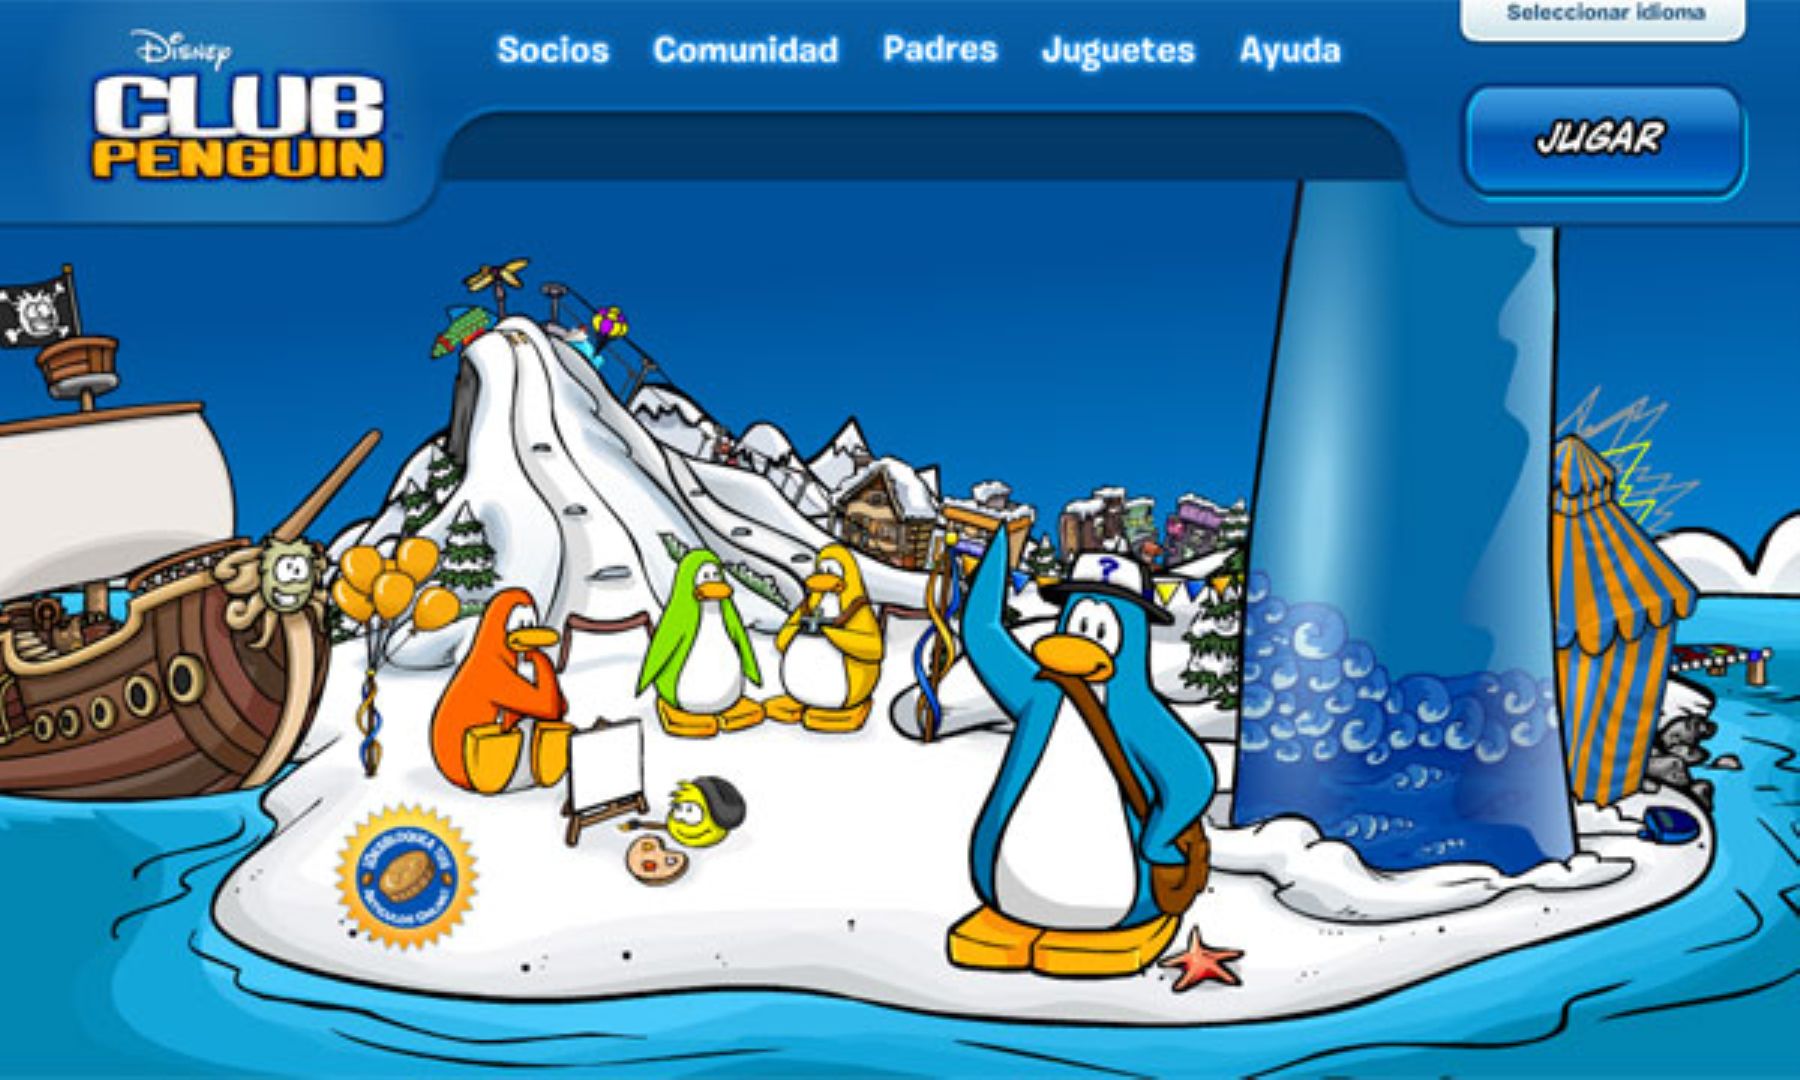 Disney's Club Penguin adds Spanish language support | Noticias | Agencia  Peruana de Noticias Andina